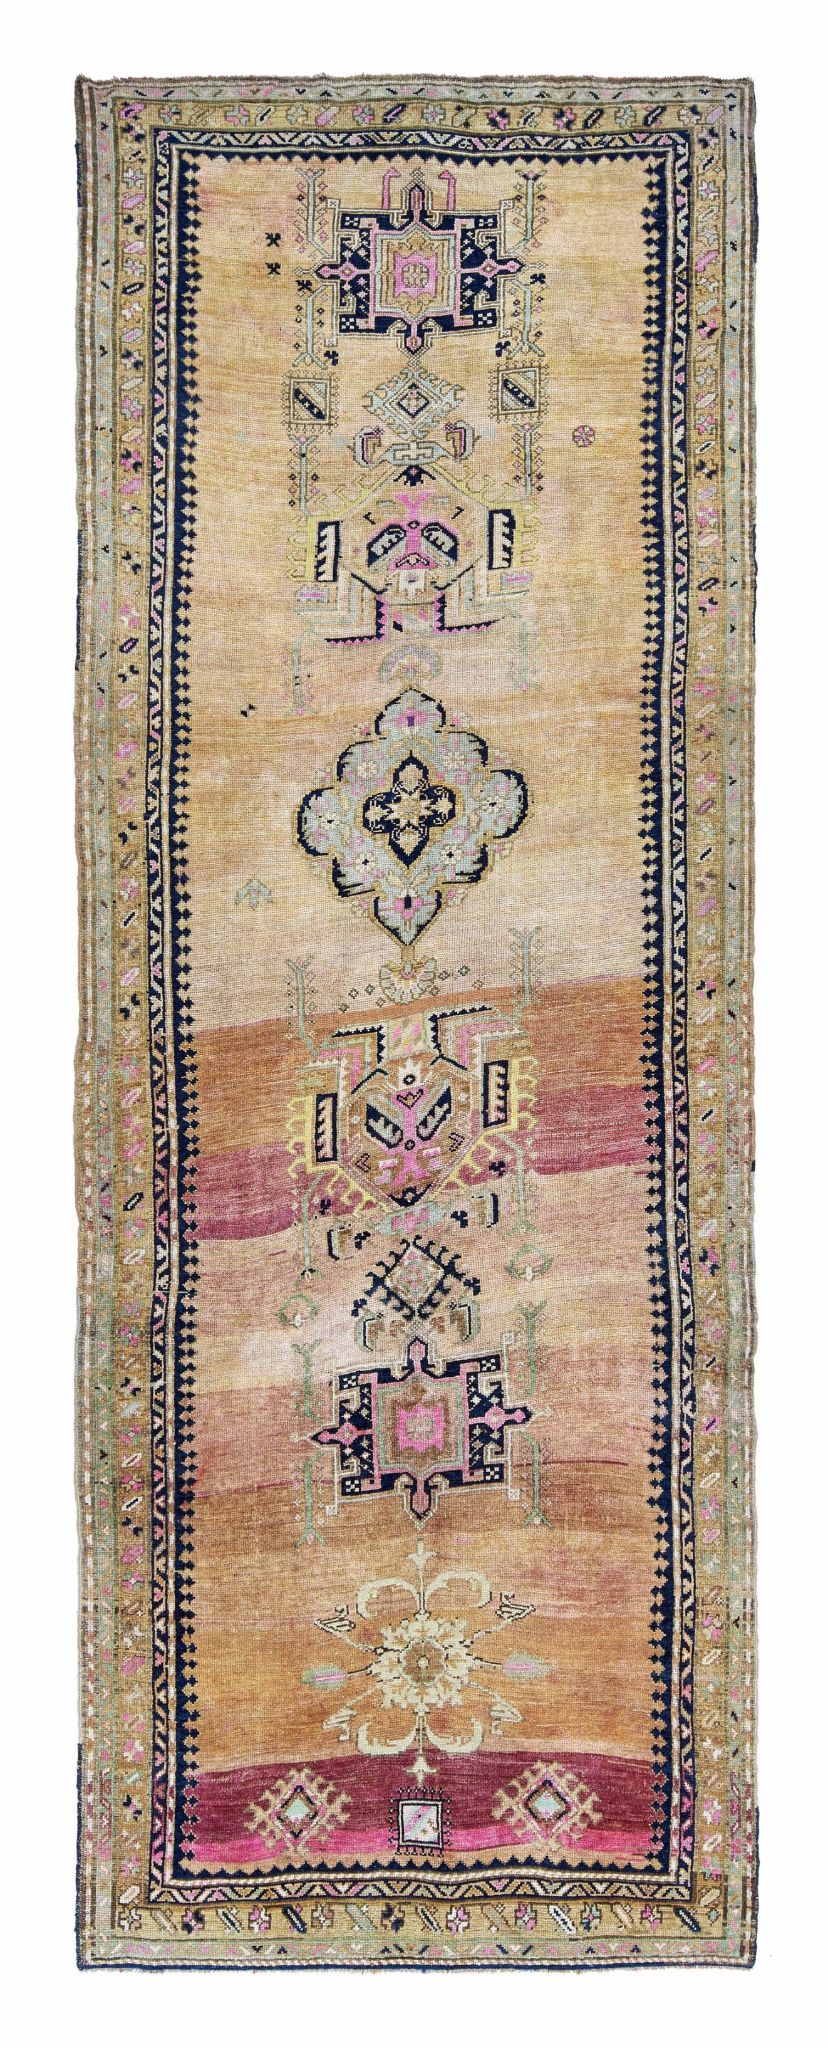 5x15 Colorful Old & Vintage Turkish Area Rug-turkish_rugs-oriental_rugs-kilim_rugs-oushak_rugs